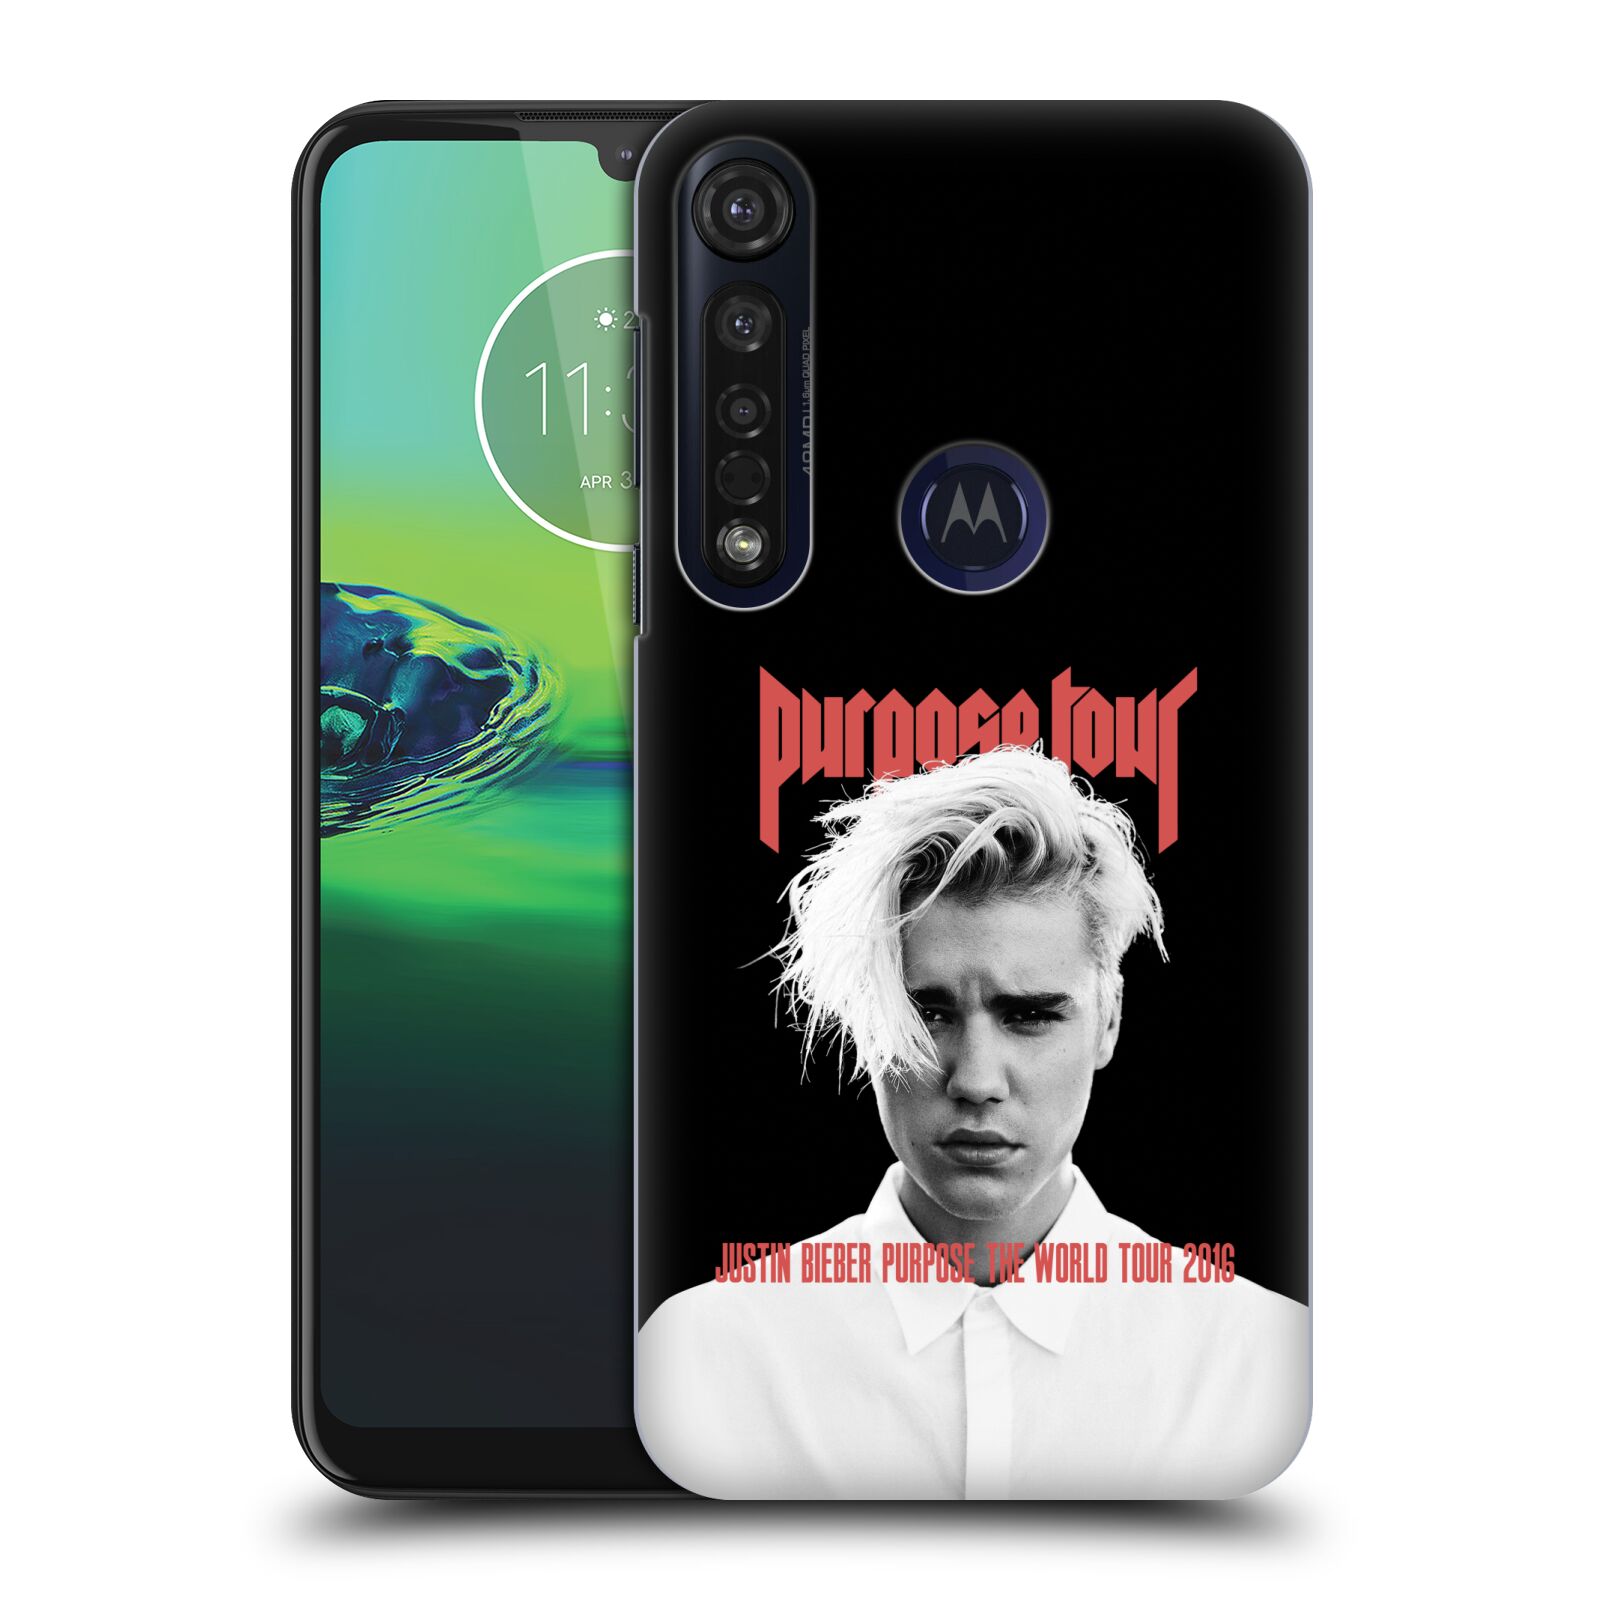 Pouzdro na mobil Motorola Moto G8 PLUS - HEAD CASE - Justin Bieber foto Purpose tour černé pozadí